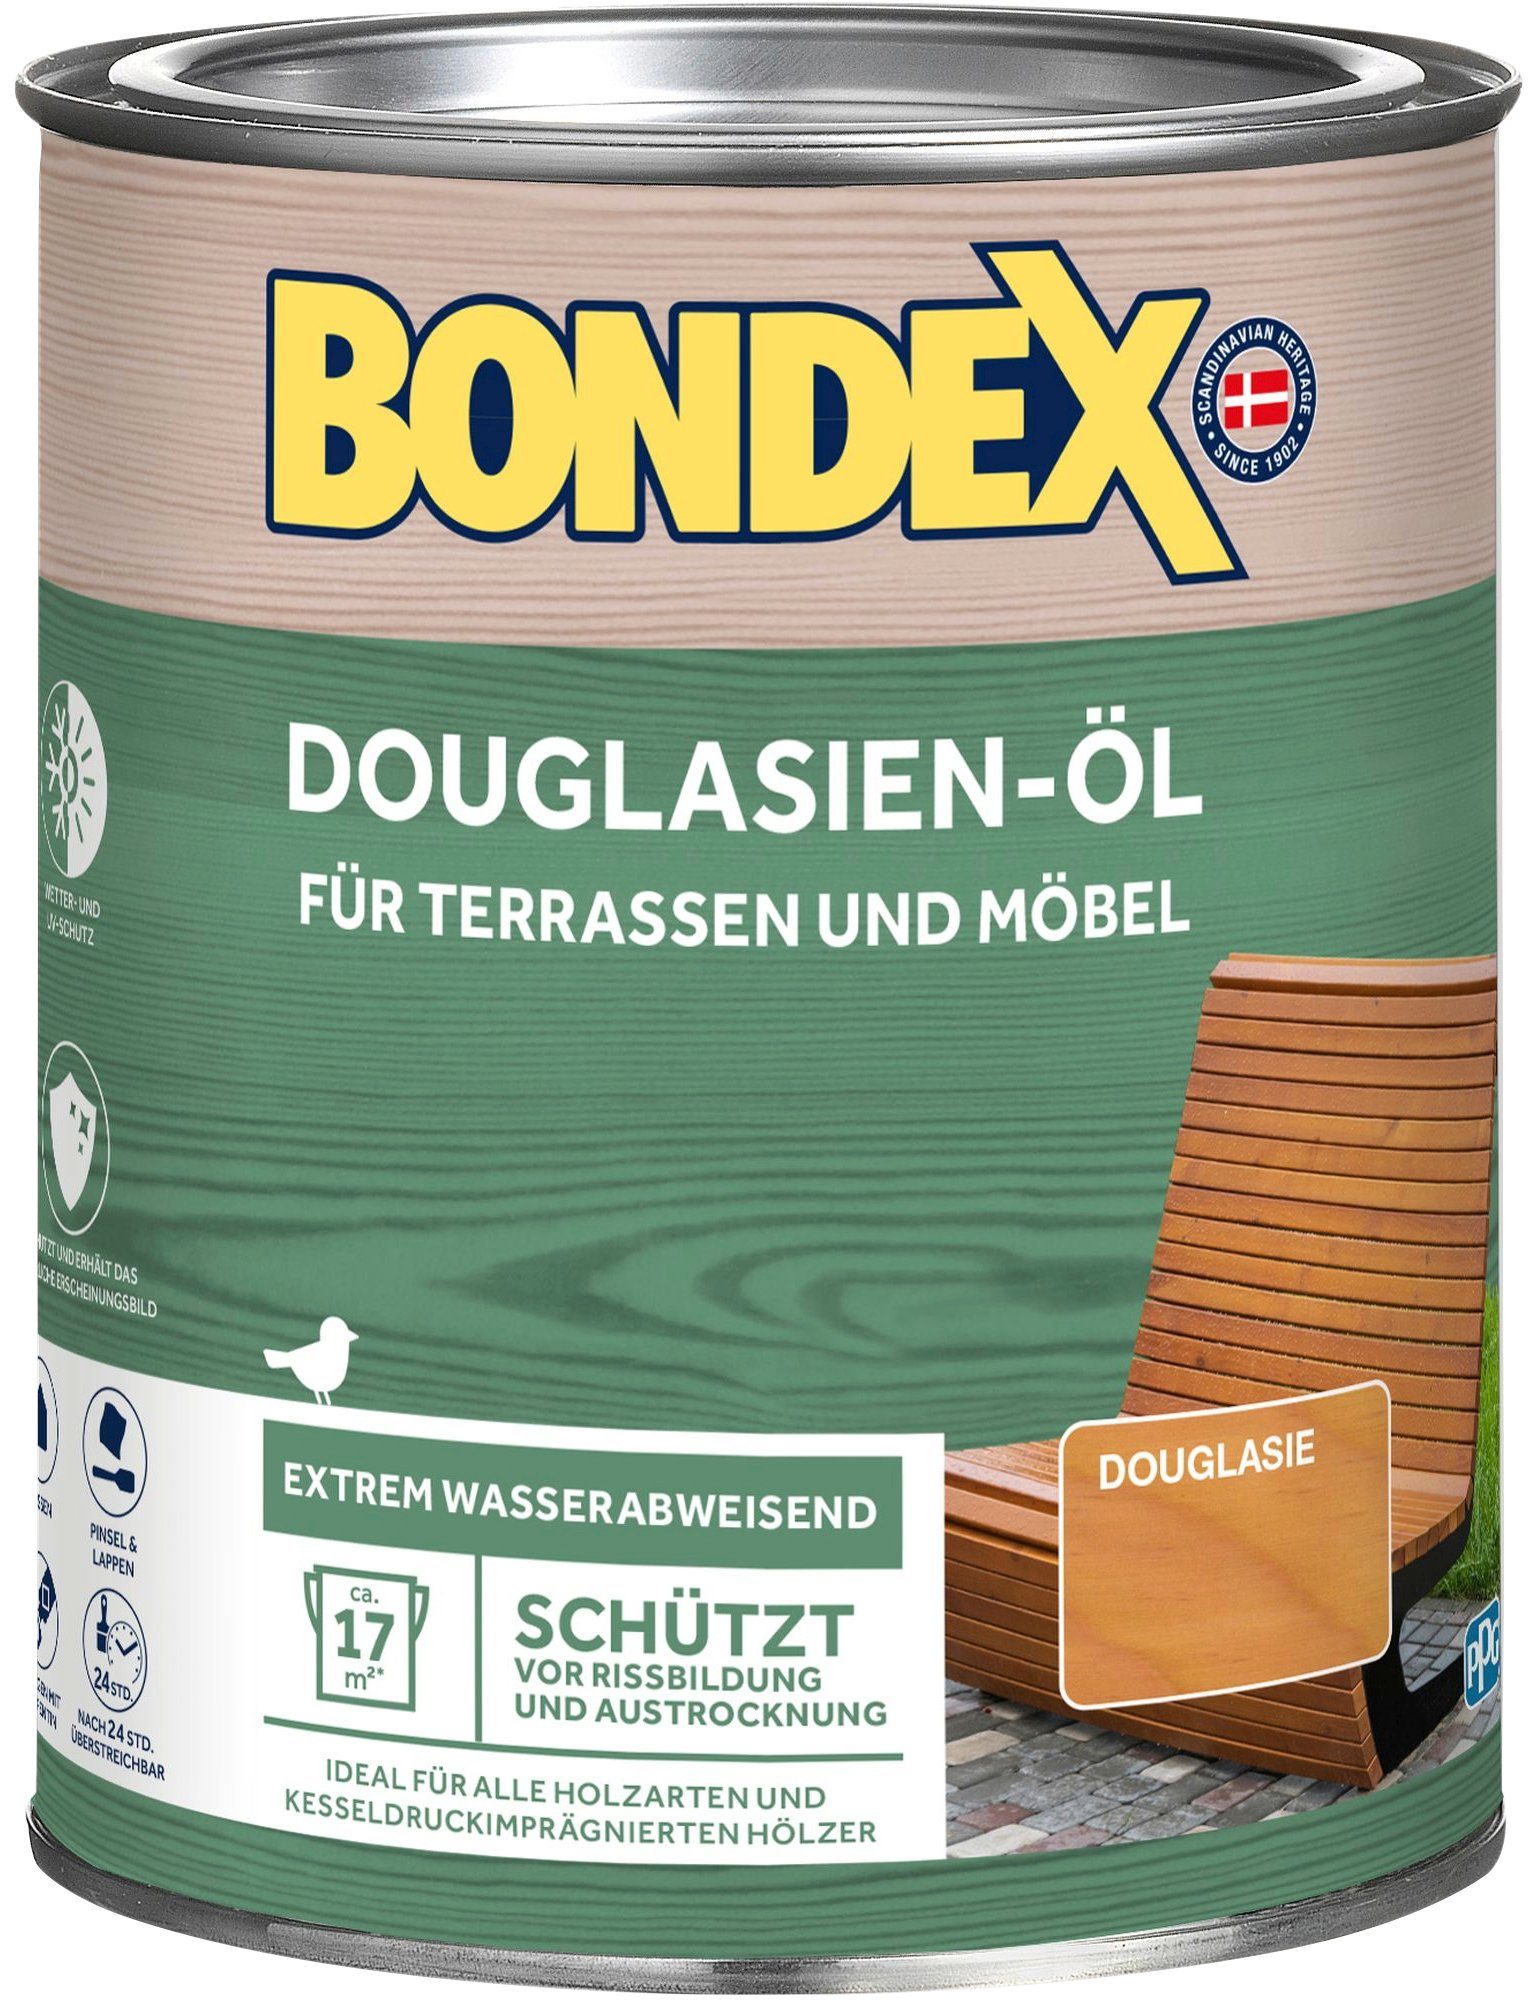 Holzöl für wasserabweisend Terrassen & Möbel, Bondex extrem DOUGLASIEN-ÖL,